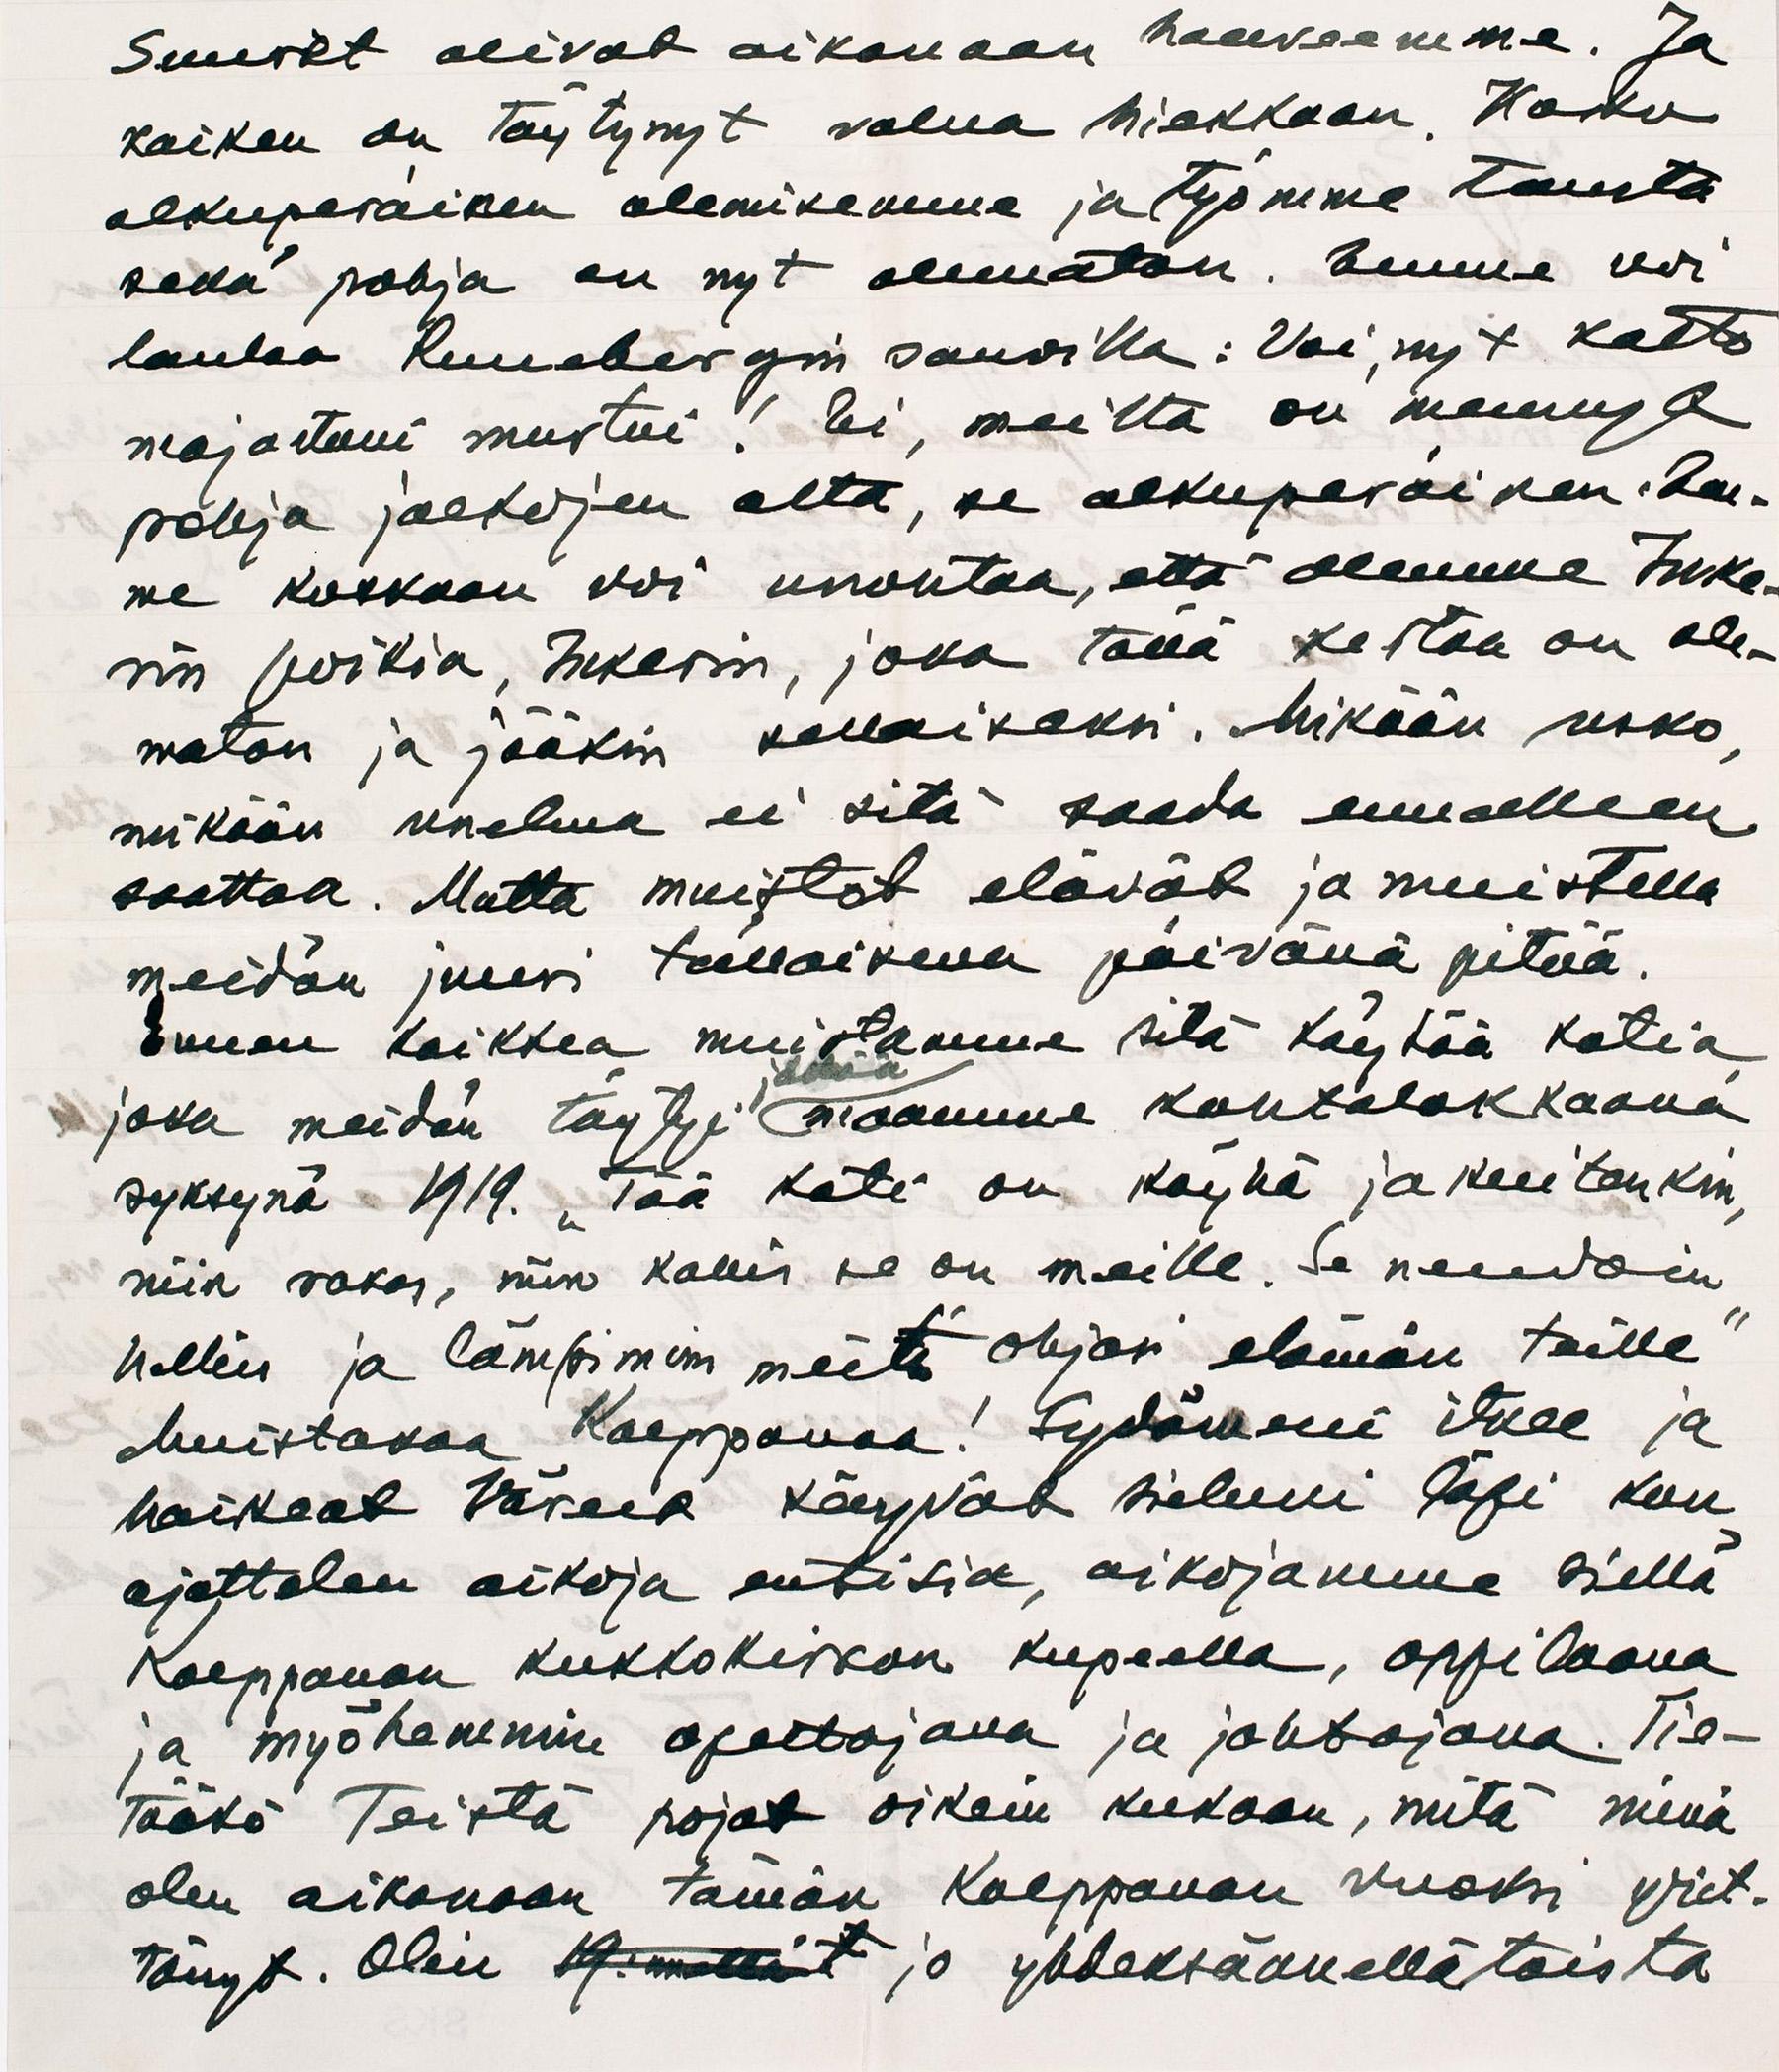 Kaapre Tynnin kirje Antti Hämäläiselle ja Aappo Metiäiselle 21.6.1945. SKS KIA, Kaapre Tynnin arkisto. CC BY 4.0